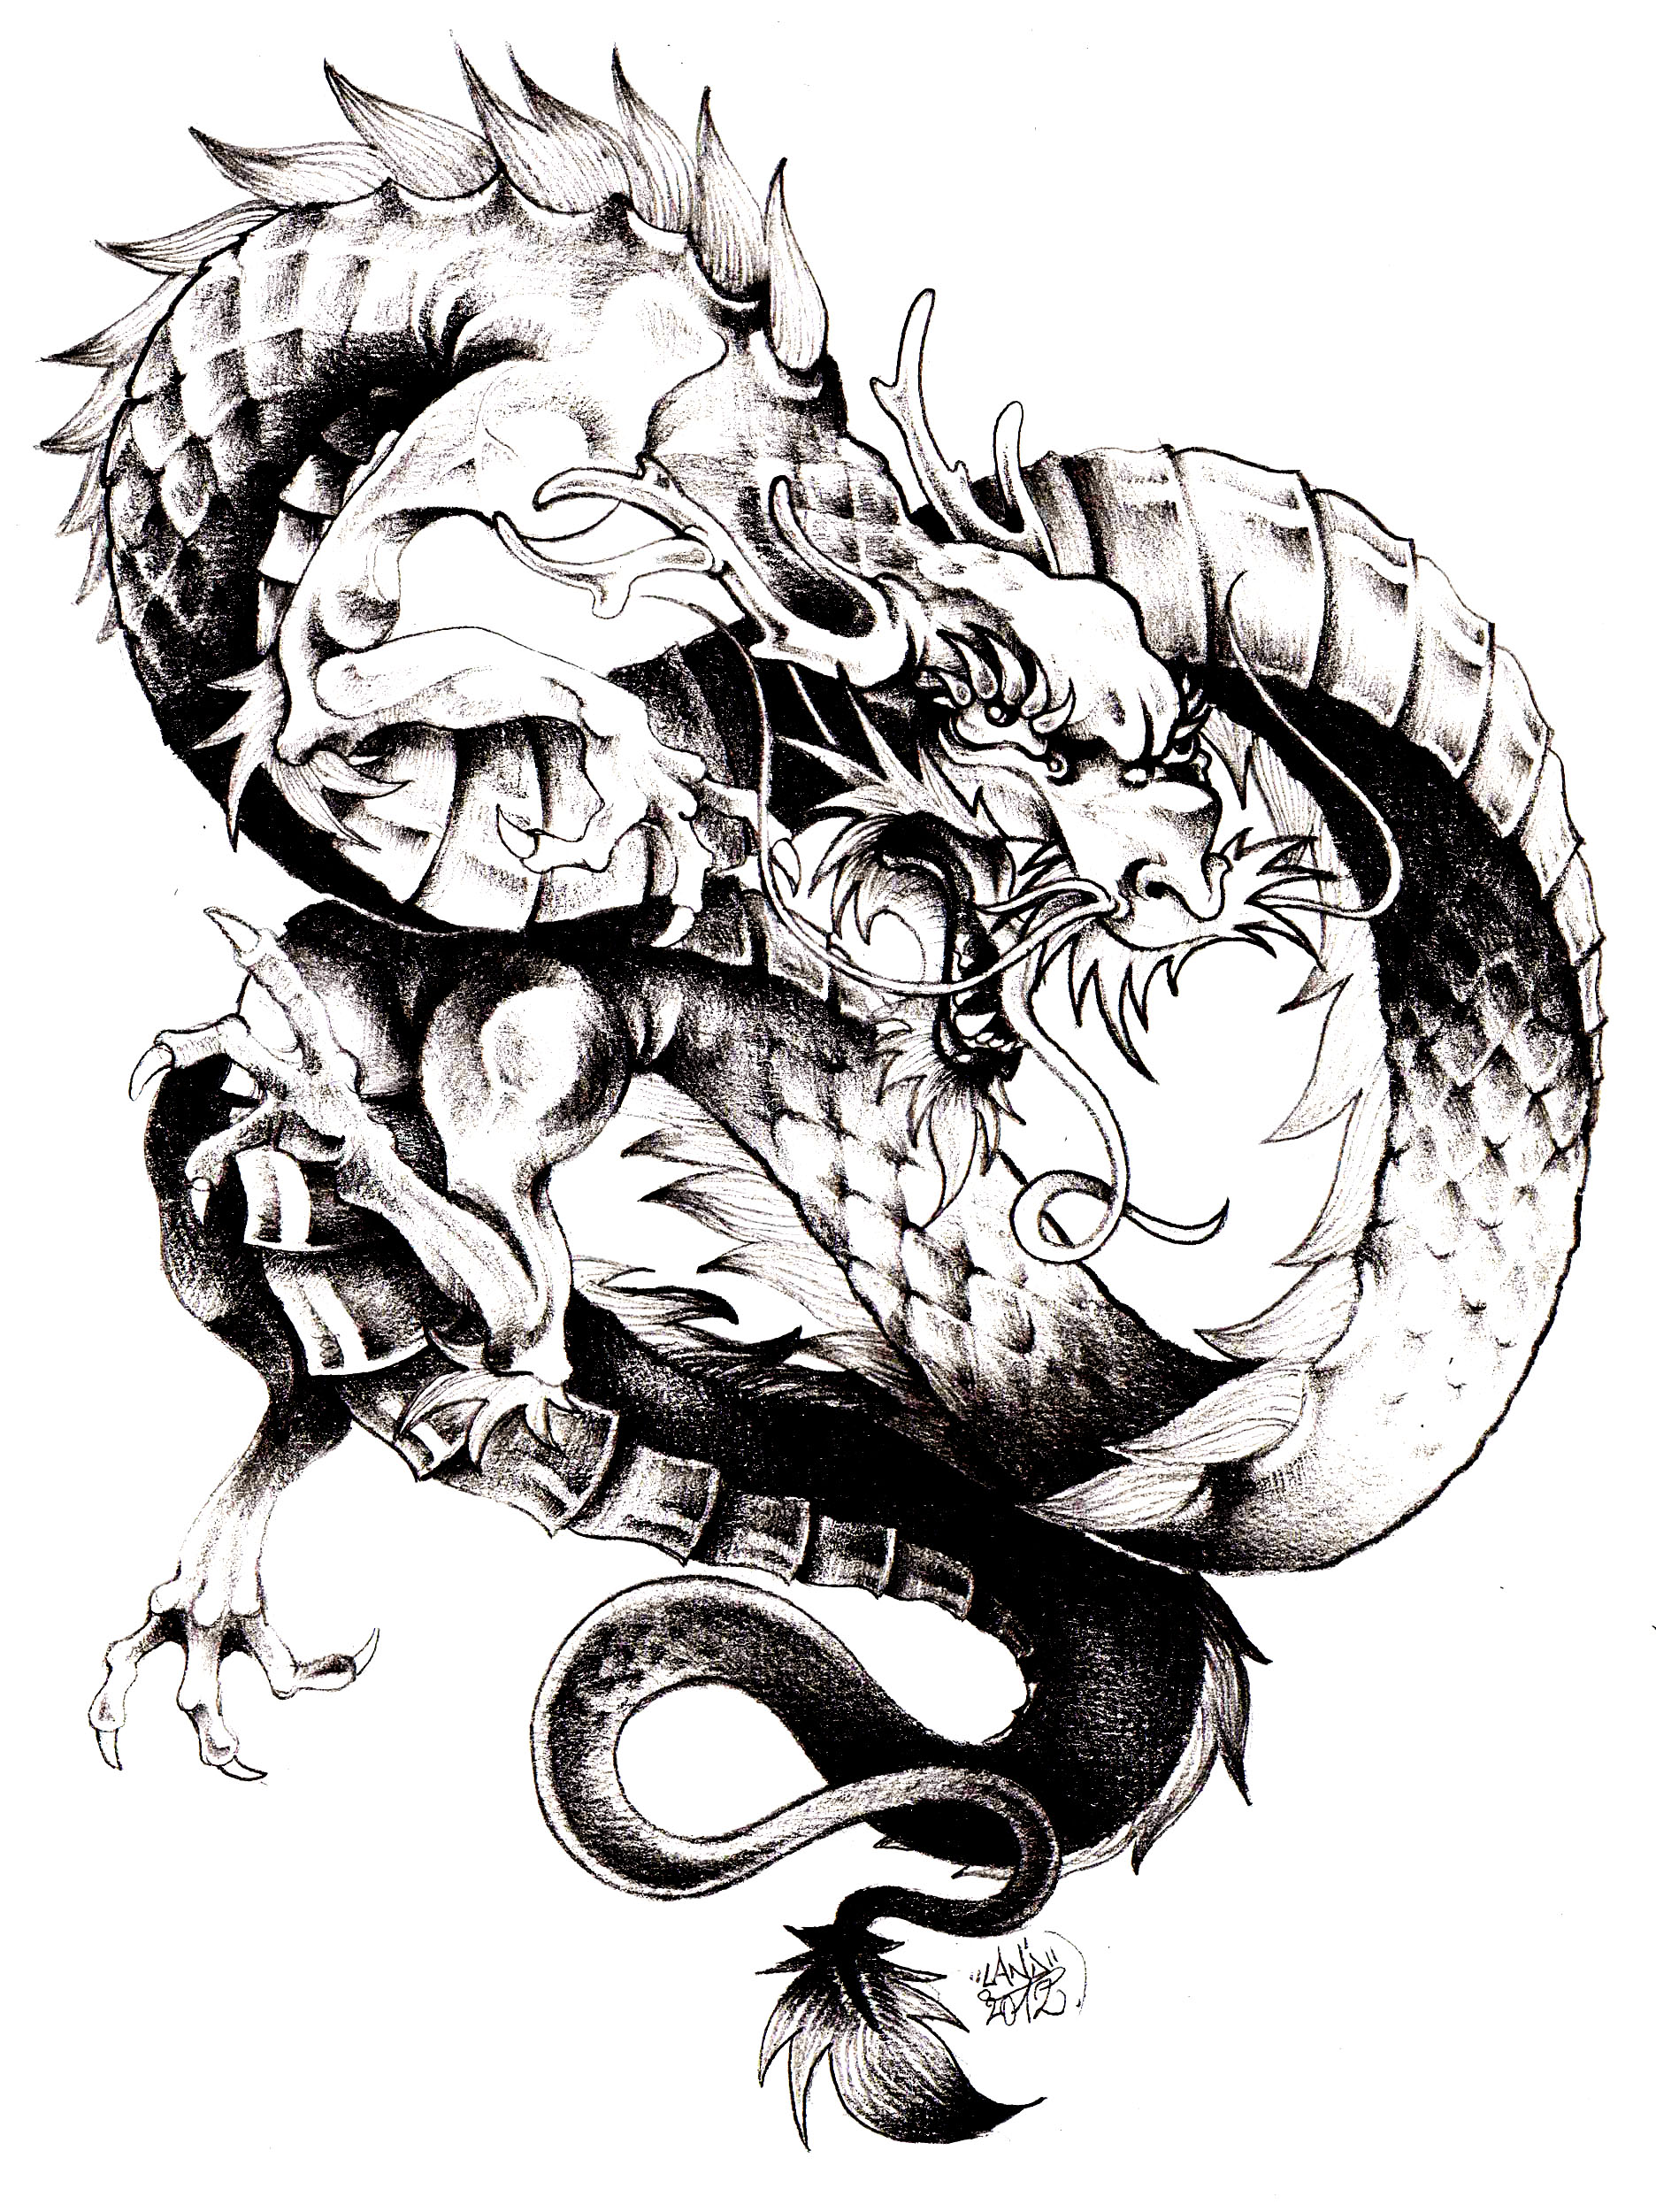 O dragão, um dos principais símbolos da China